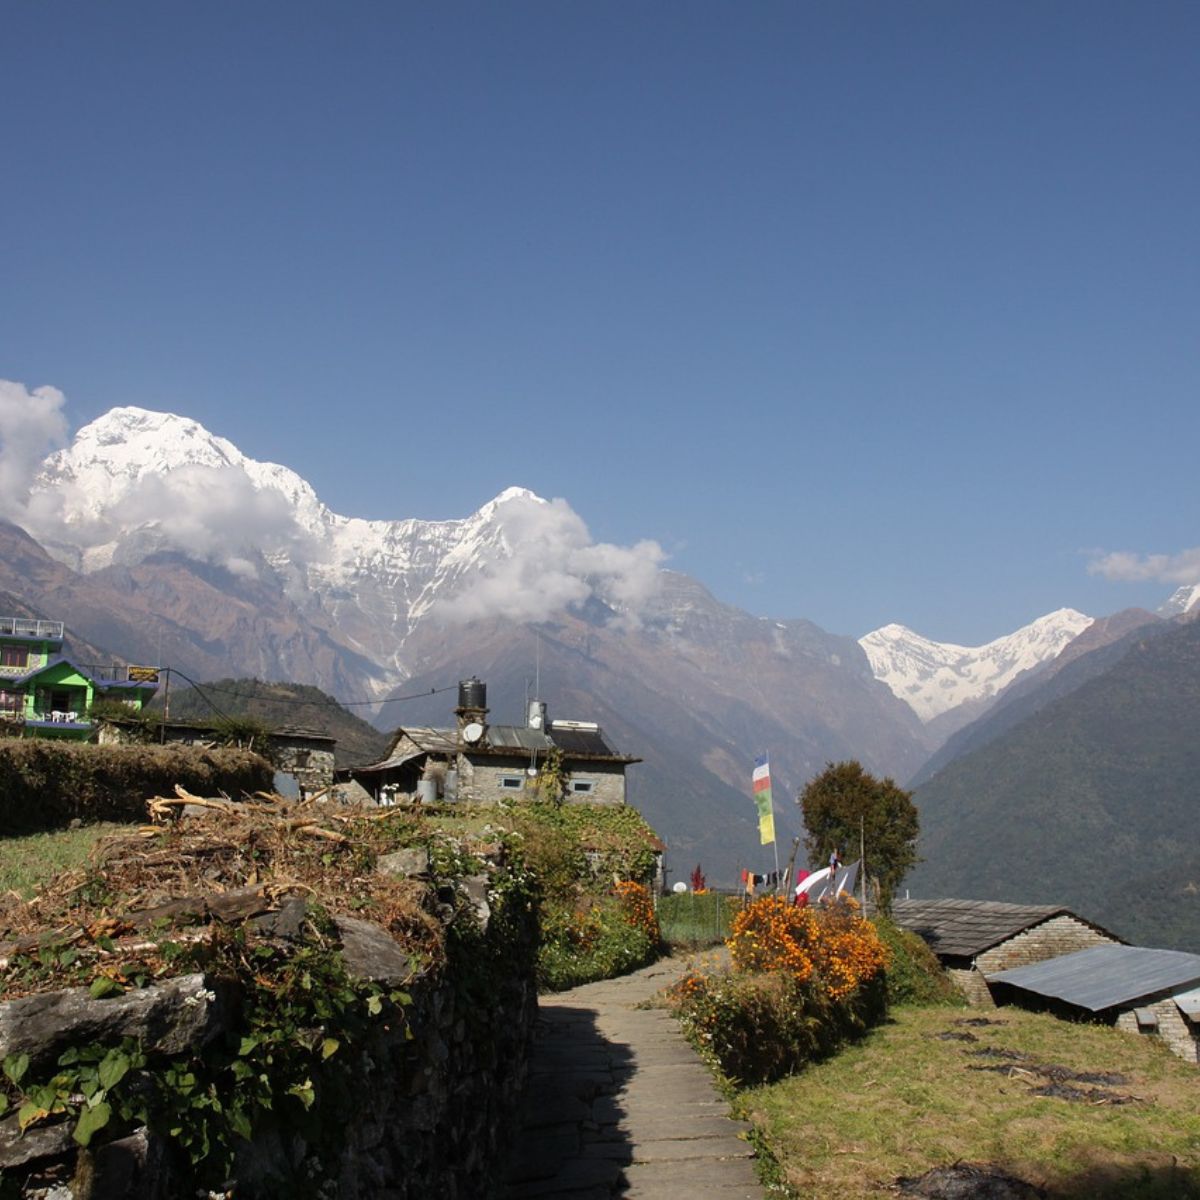 Nepal landslide risks